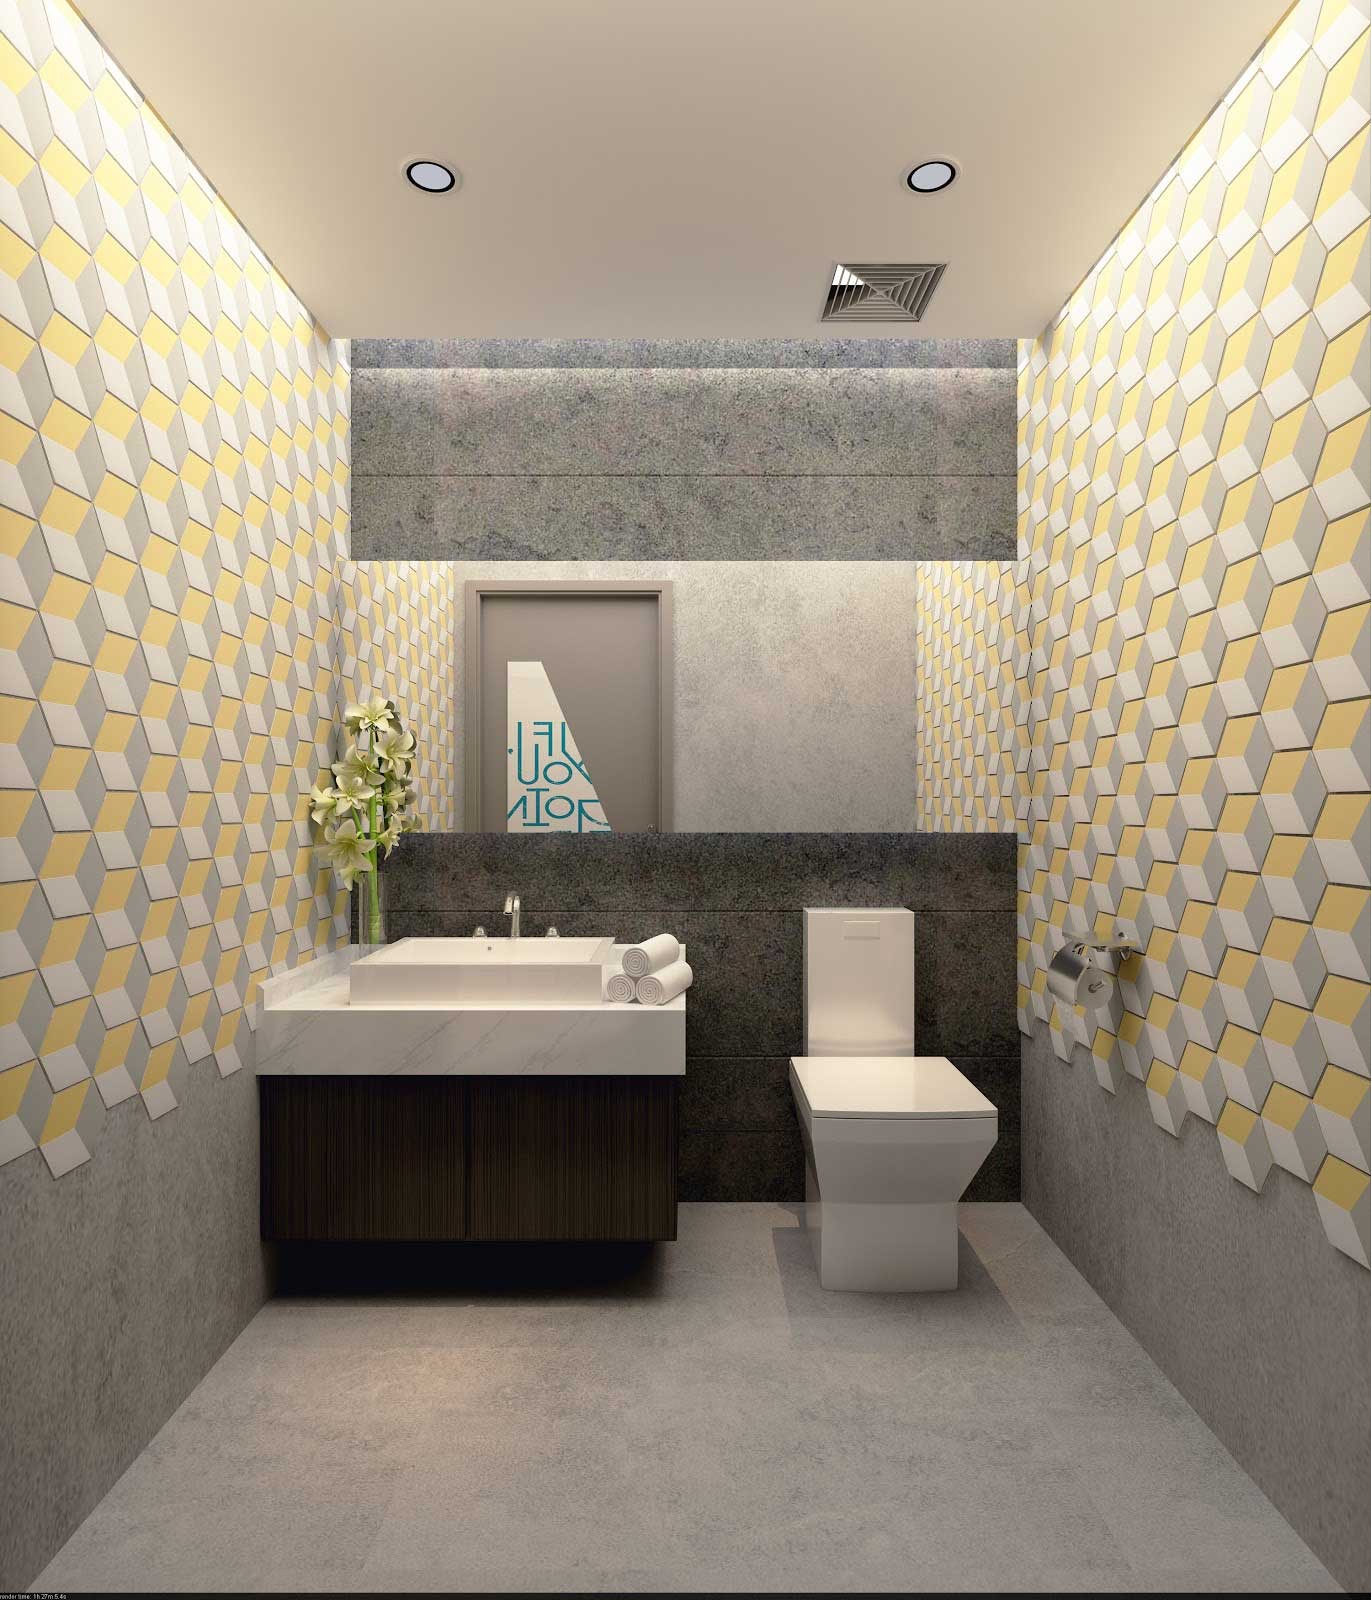 Gạch ốp nhà vệ sinh: Với những nét thiết kế độc đáo và tinh tế, gạch ốp nhà vệ sinh sẽ mang đến cho những căn phòng nhỏ bé sự sang trọng và đẳng cấp. Tận hưởng không gian vệ sinh tuyệt vời và tiện nghi với gạch ốp nhà vệ sinh chất lượng.